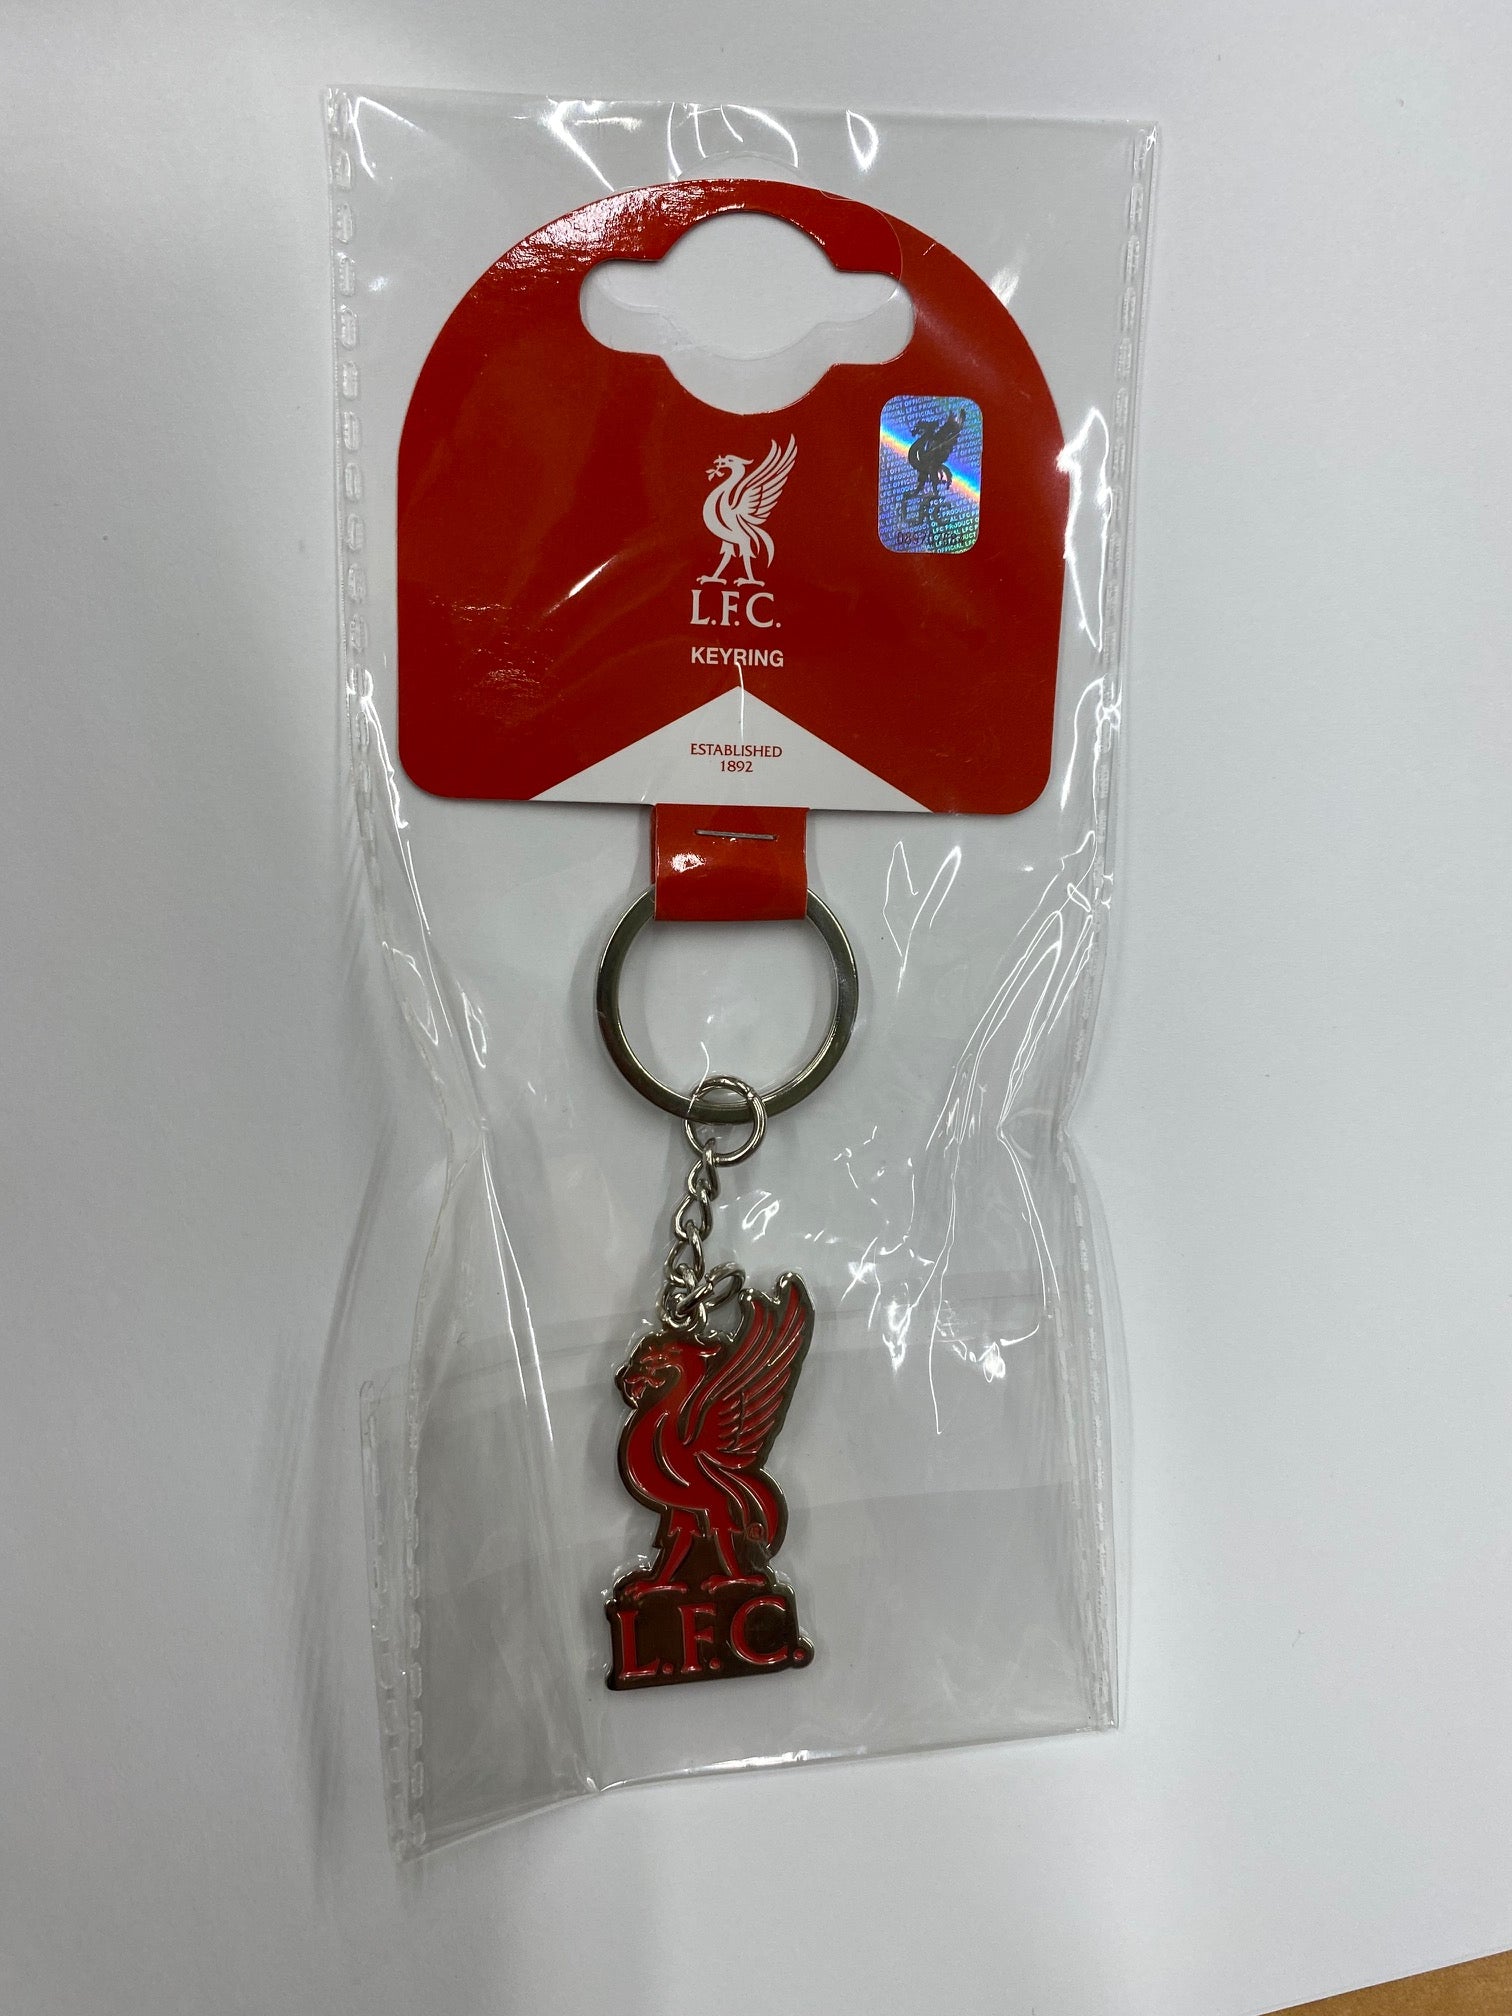 Liverpool Crest Keychain